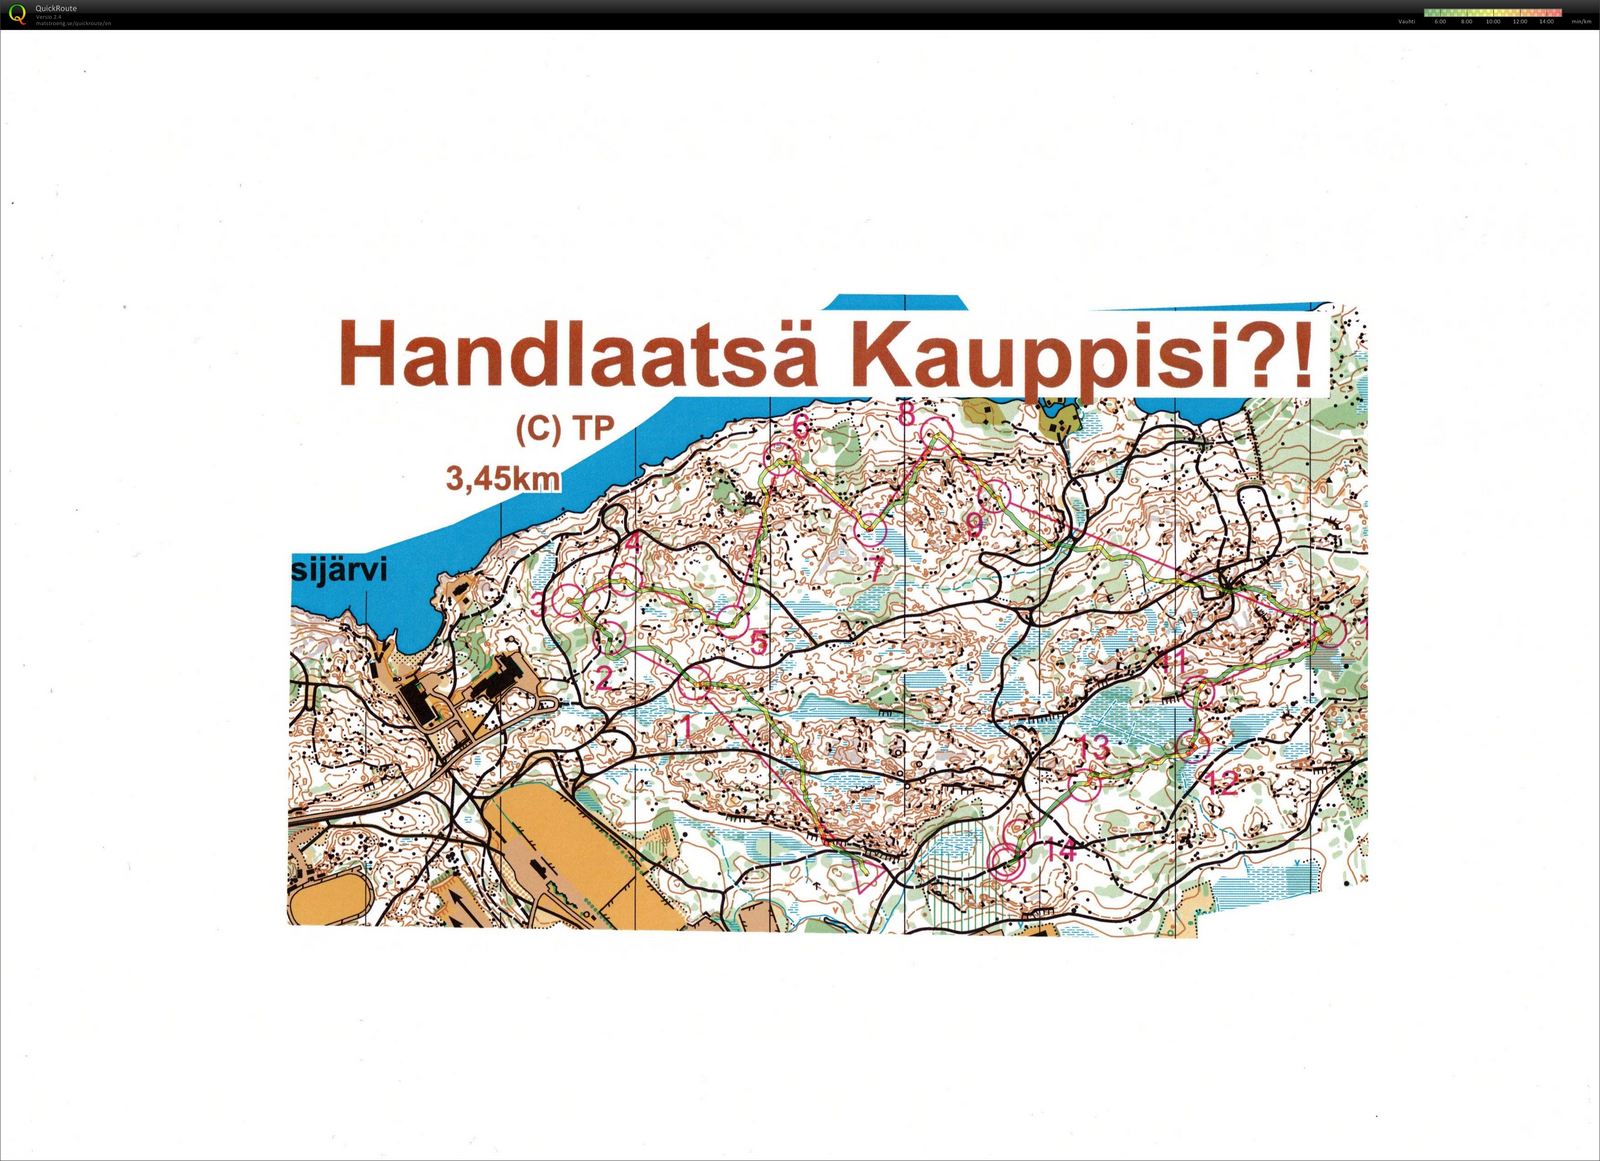 Handlaatsä Kauppisi?! (11/03/2014)